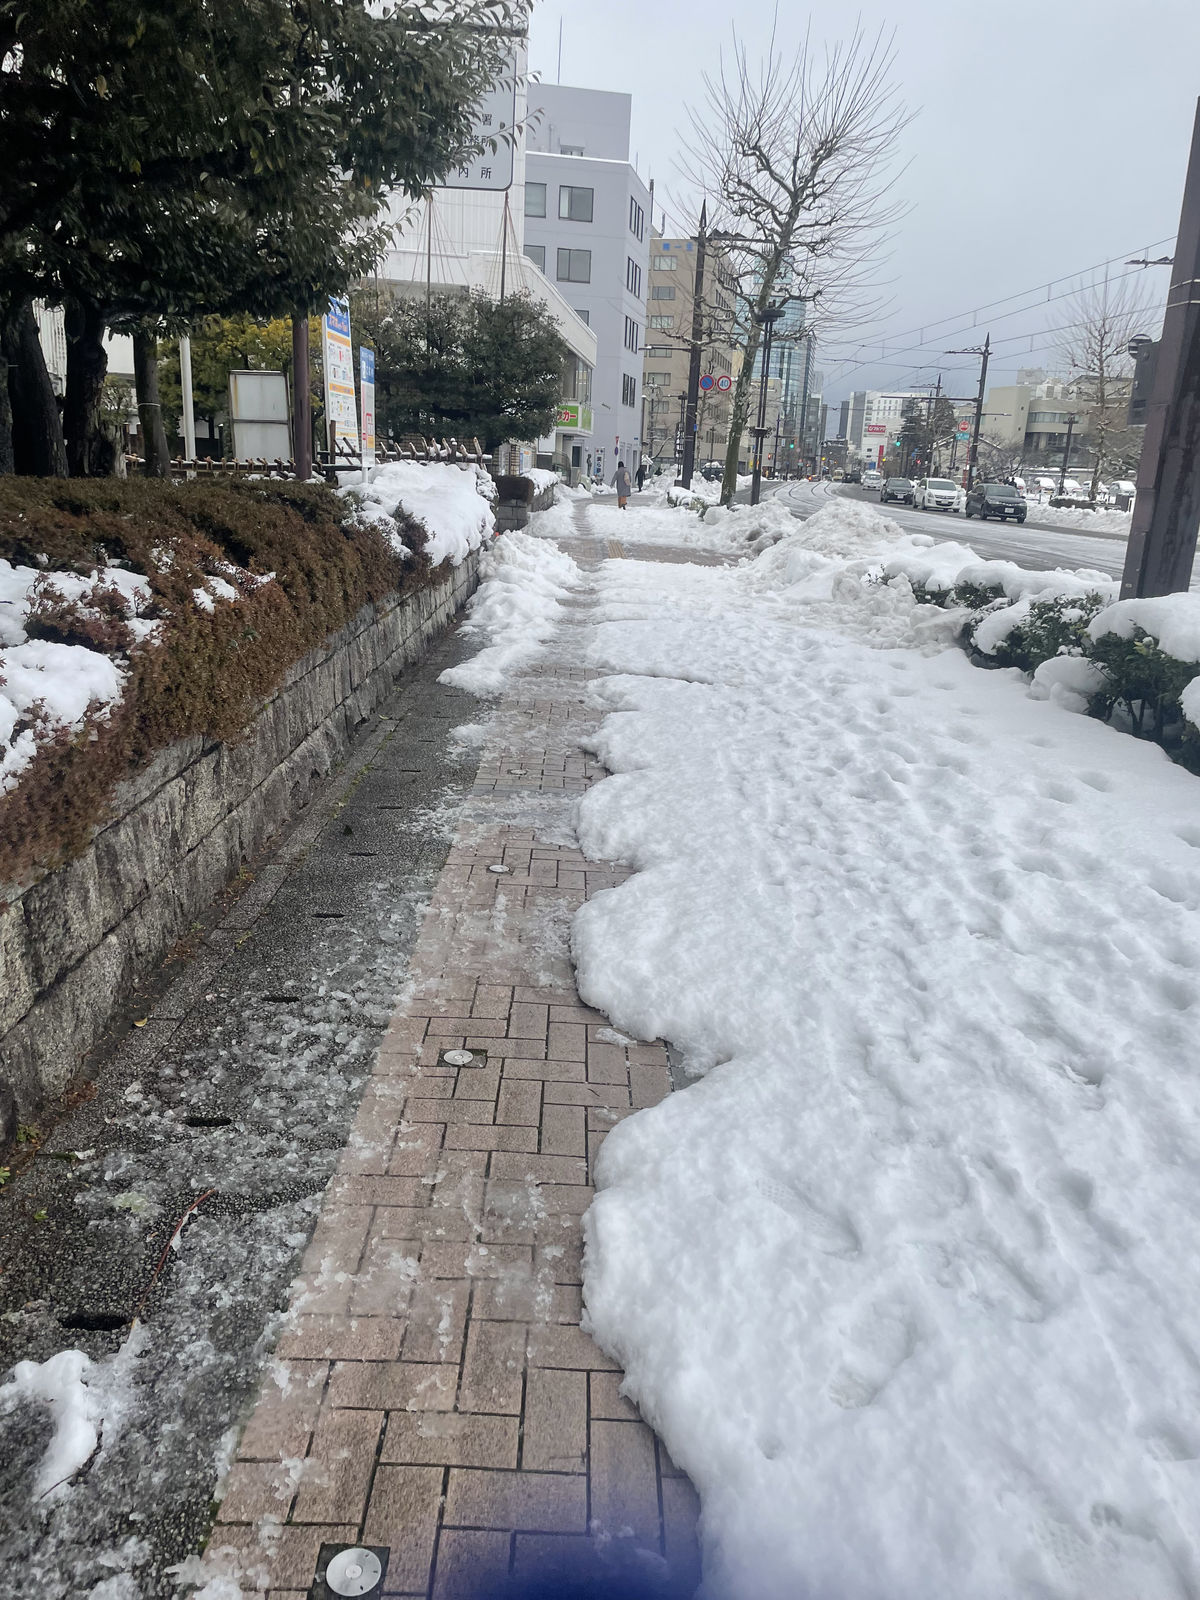 Kí sự chạy bộ giữa mùa đông Nhật Bản 2023 - chay bo nhat ban 2023 toyama 5